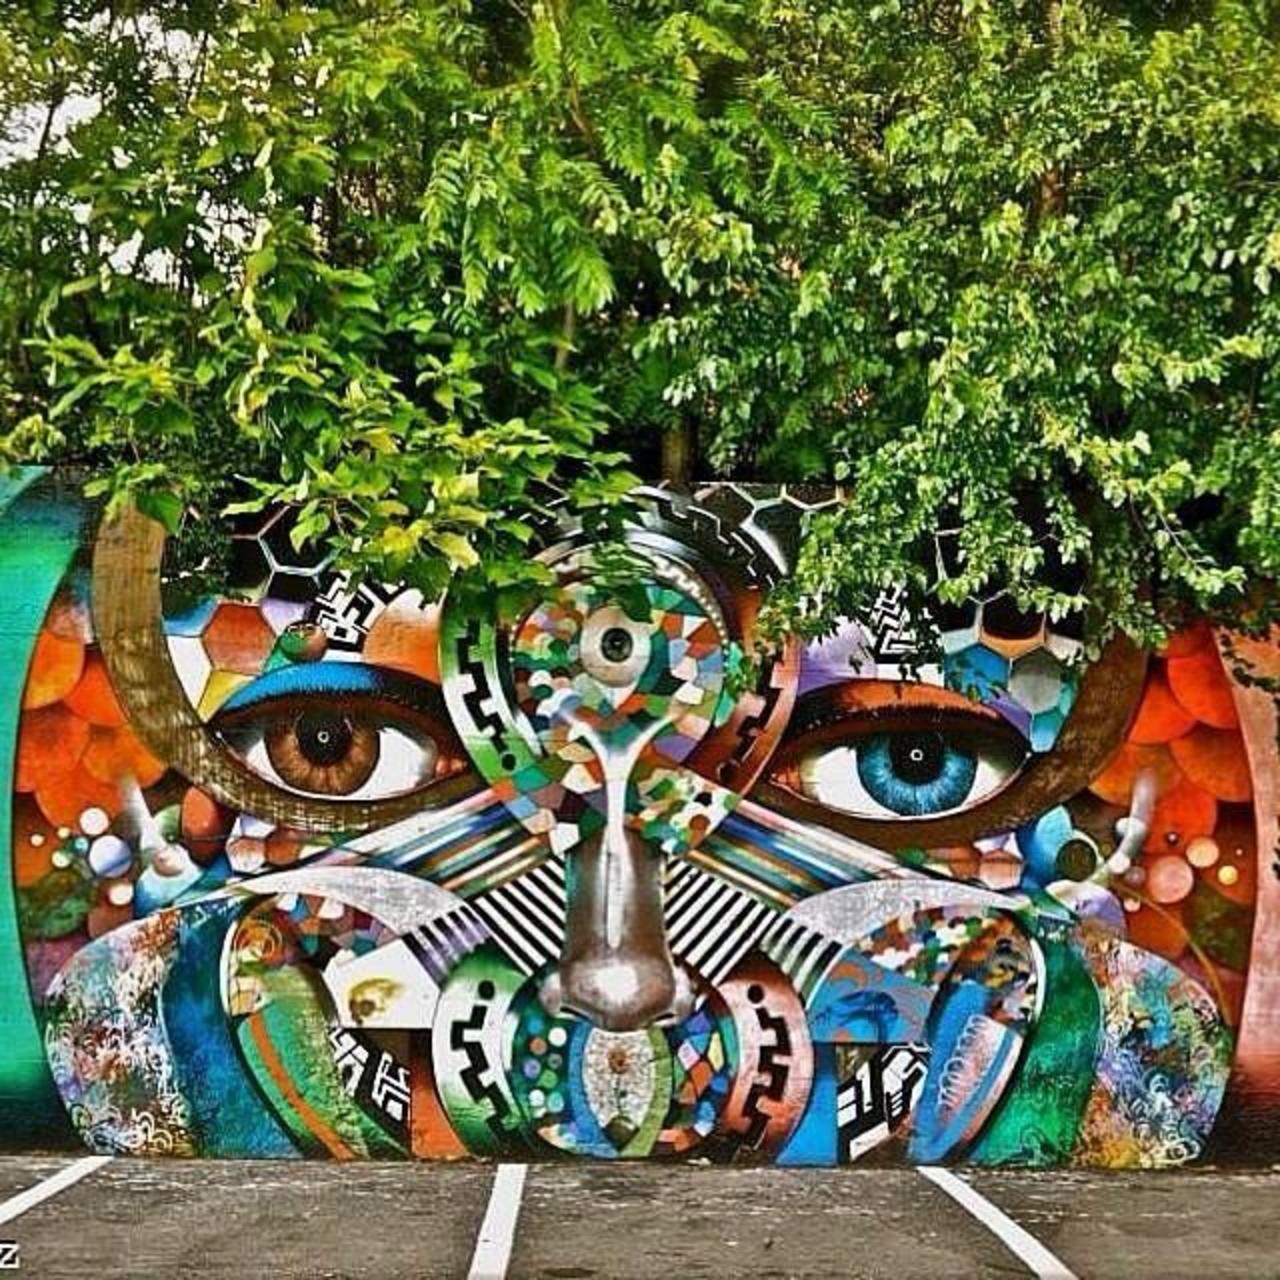 RT @designopinion: Artist @chorboogie new nature & Street Art piece. #art #mural #graffiti #streetart http://t.co/KdezPTQIJQ